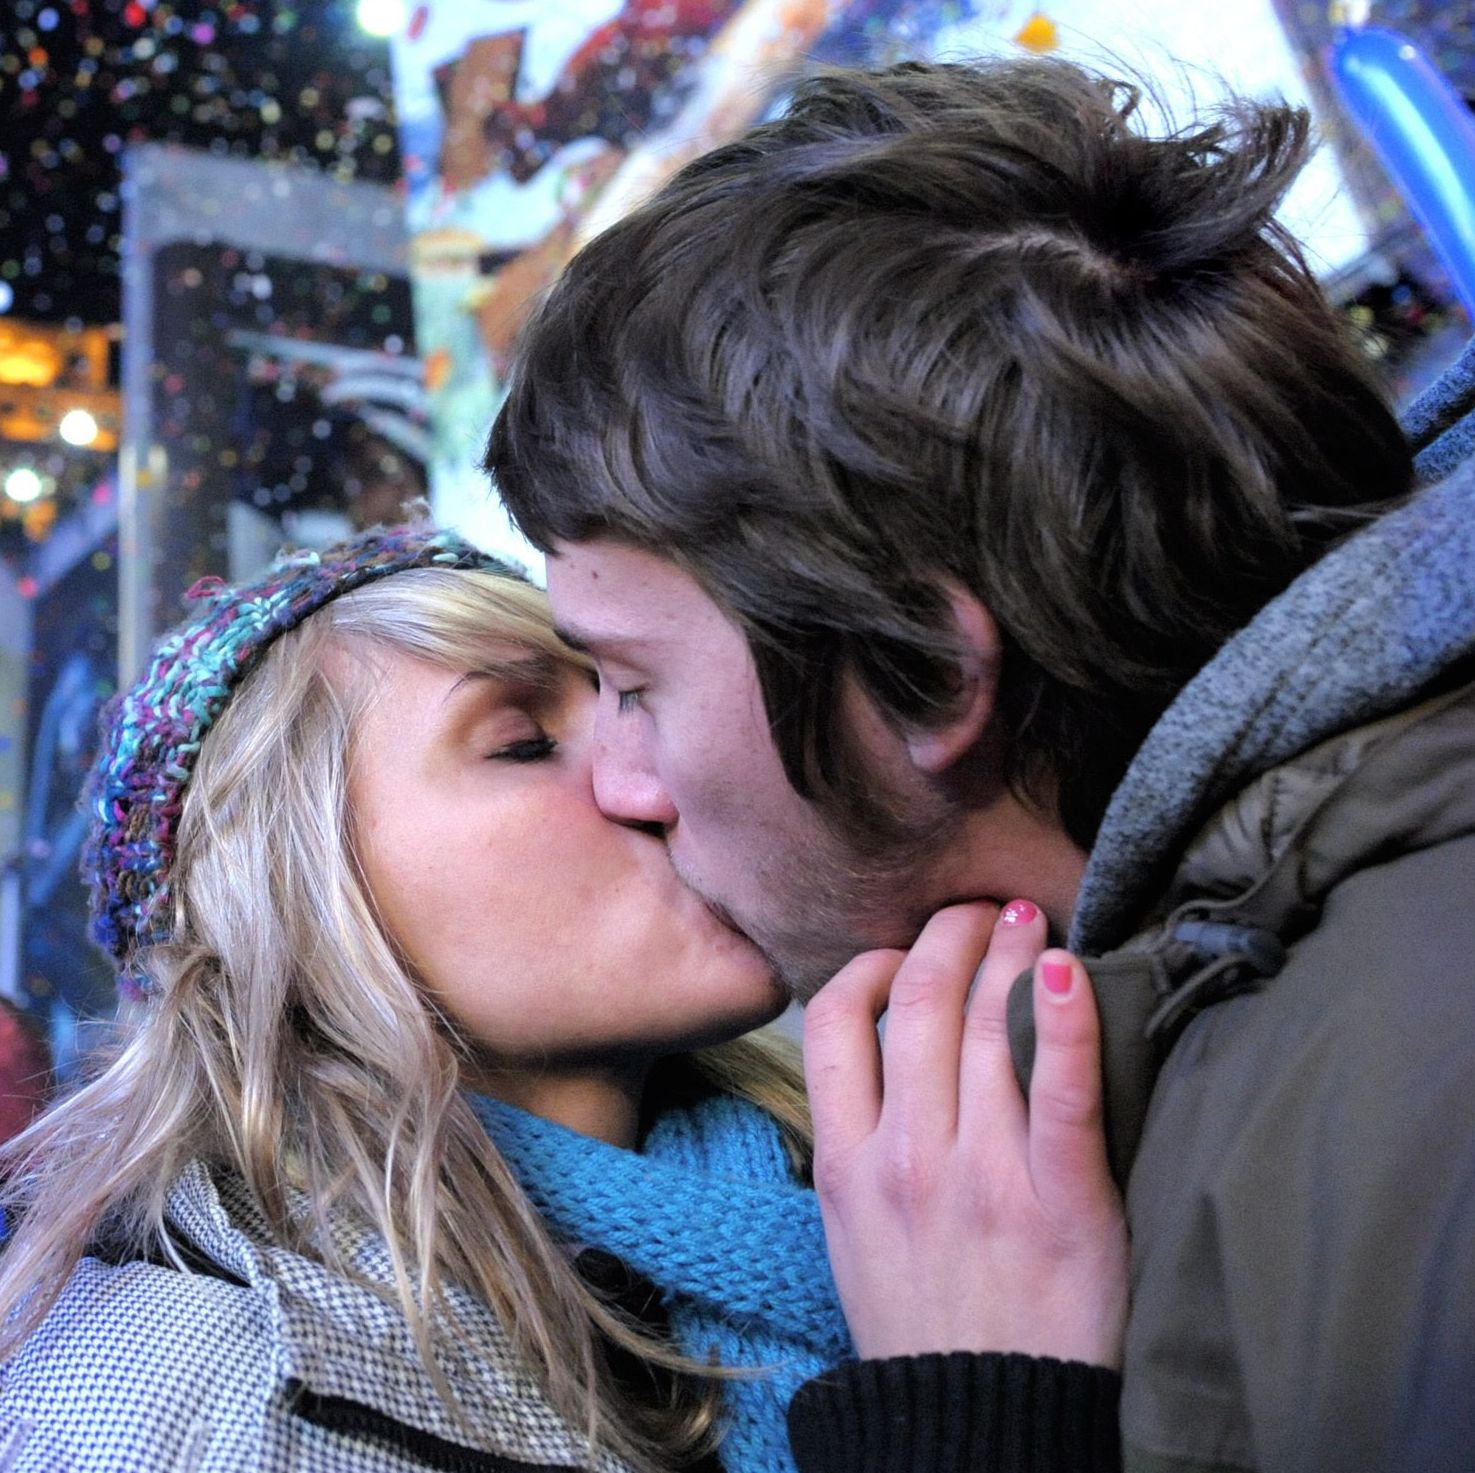 Сигналите, доловени в интимността на целувката, представляват биологични подсказки за съвместимост